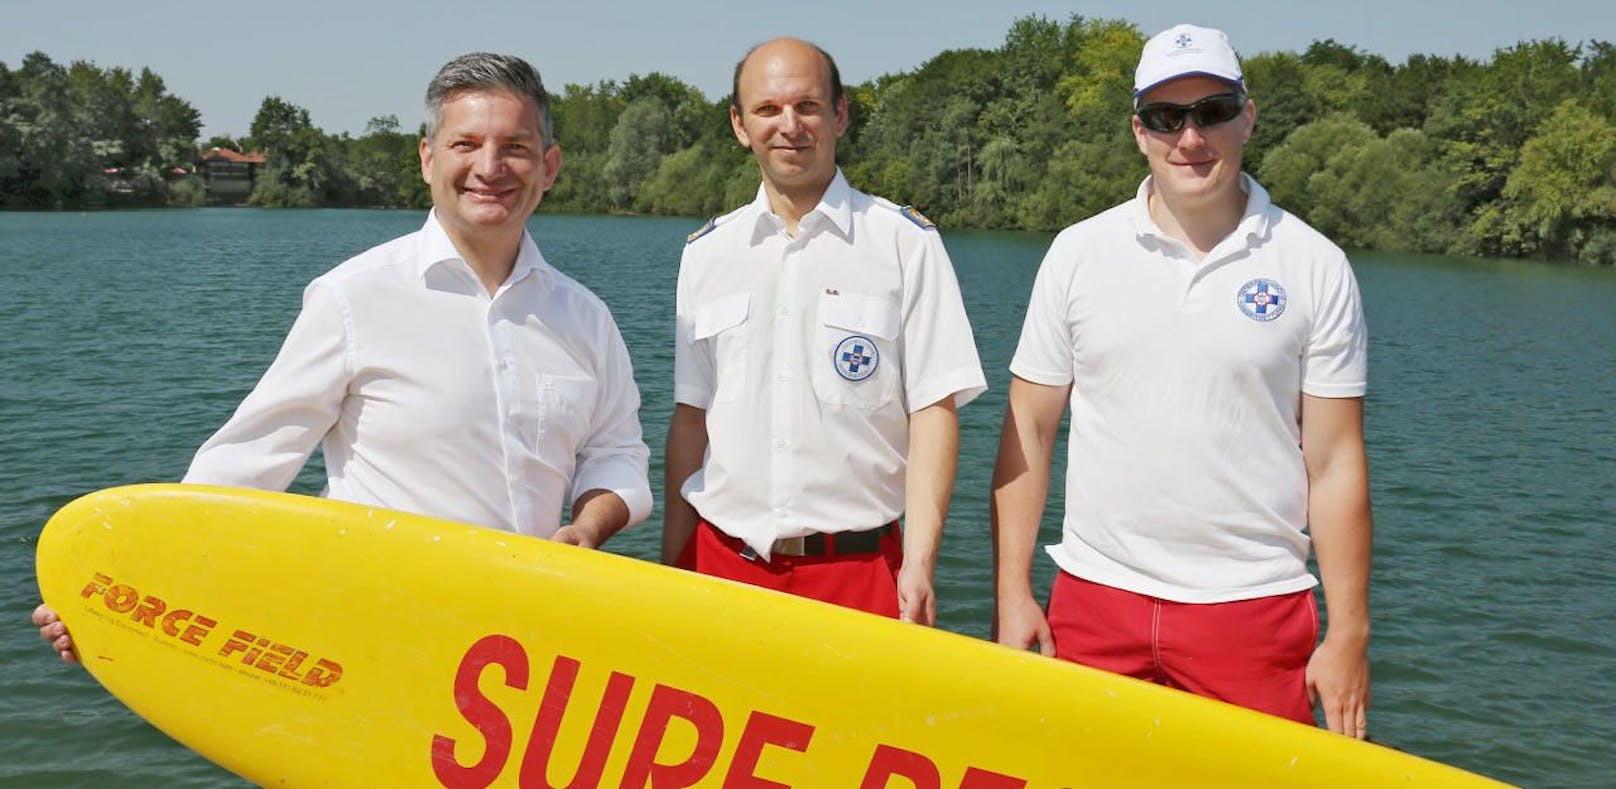 Landesrat Maurice Androsch, Wasserrettungs-Präsident Markus Schimböck und EInsatzkraft Lukas Halbartschlager.